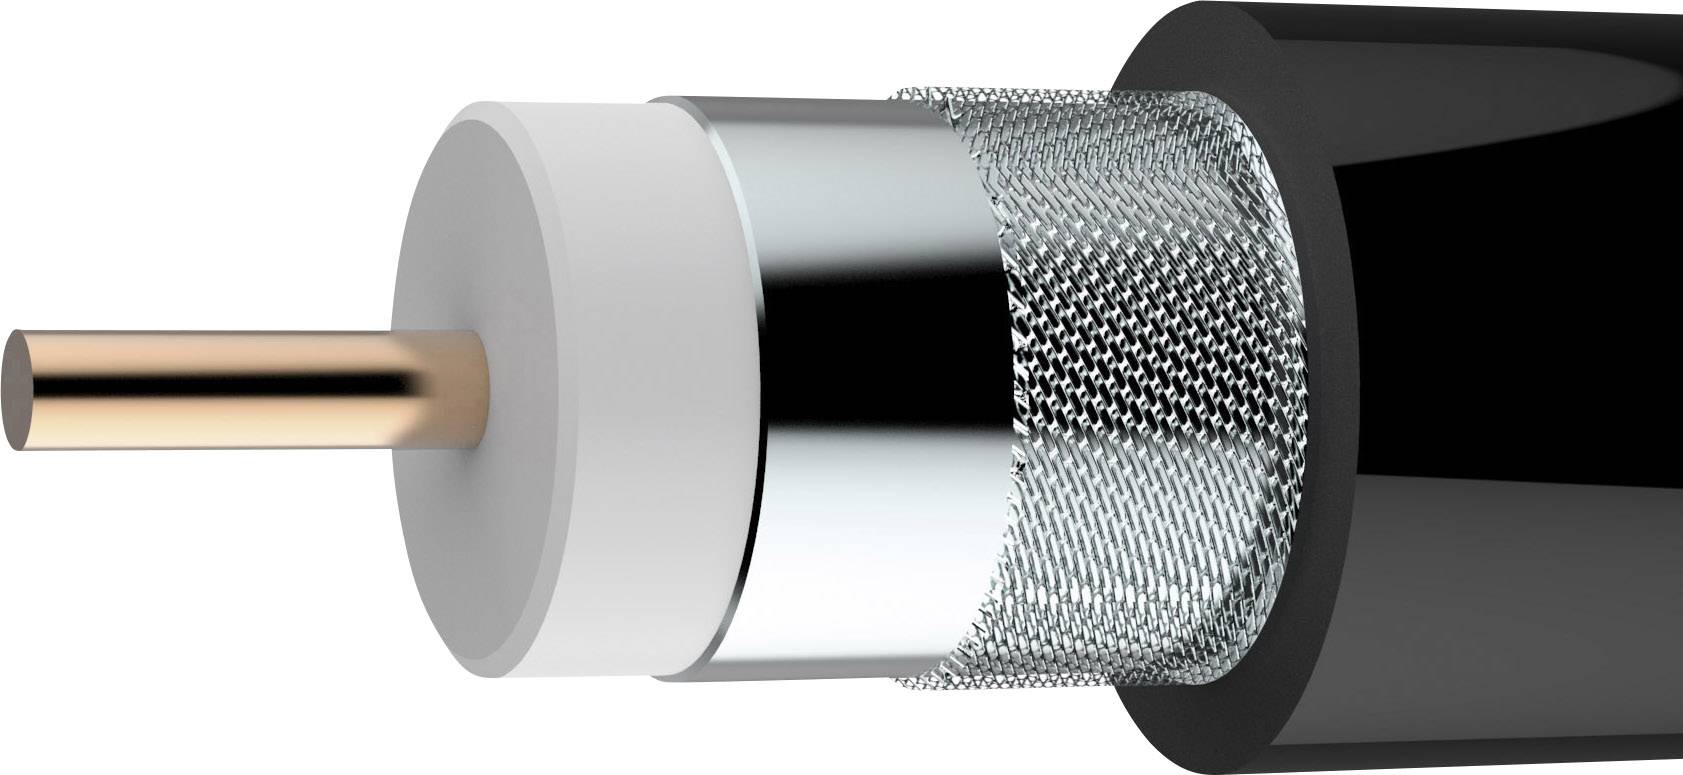 AXING Koaxialkabel Außen-Durchmesser: 10.40 mm 75 ¿ 90 dB Schwarz Axing SKB 11-03 Meterware